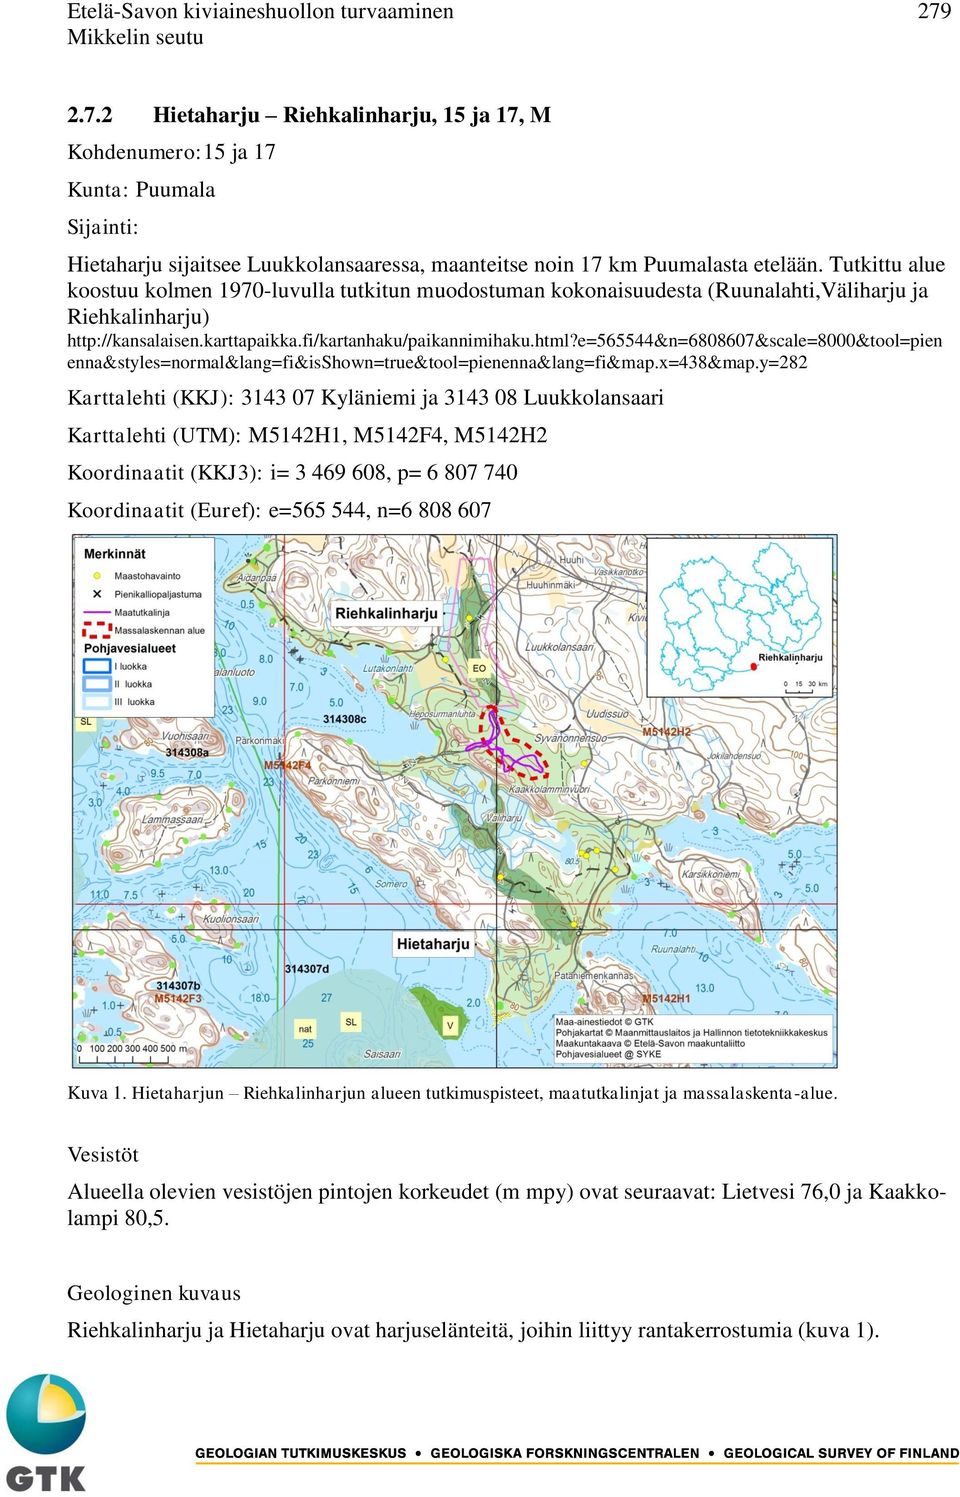 Tutkittu alue koostuu kolmen 1970-luvulla tutkitun muodostuman kokonaisuudesta (Ruunalahti,Väliharju ja Riehkalinharju) http://kansalaisen.karttapaikka.fi/kartanhaku/paikannimihaku.html?